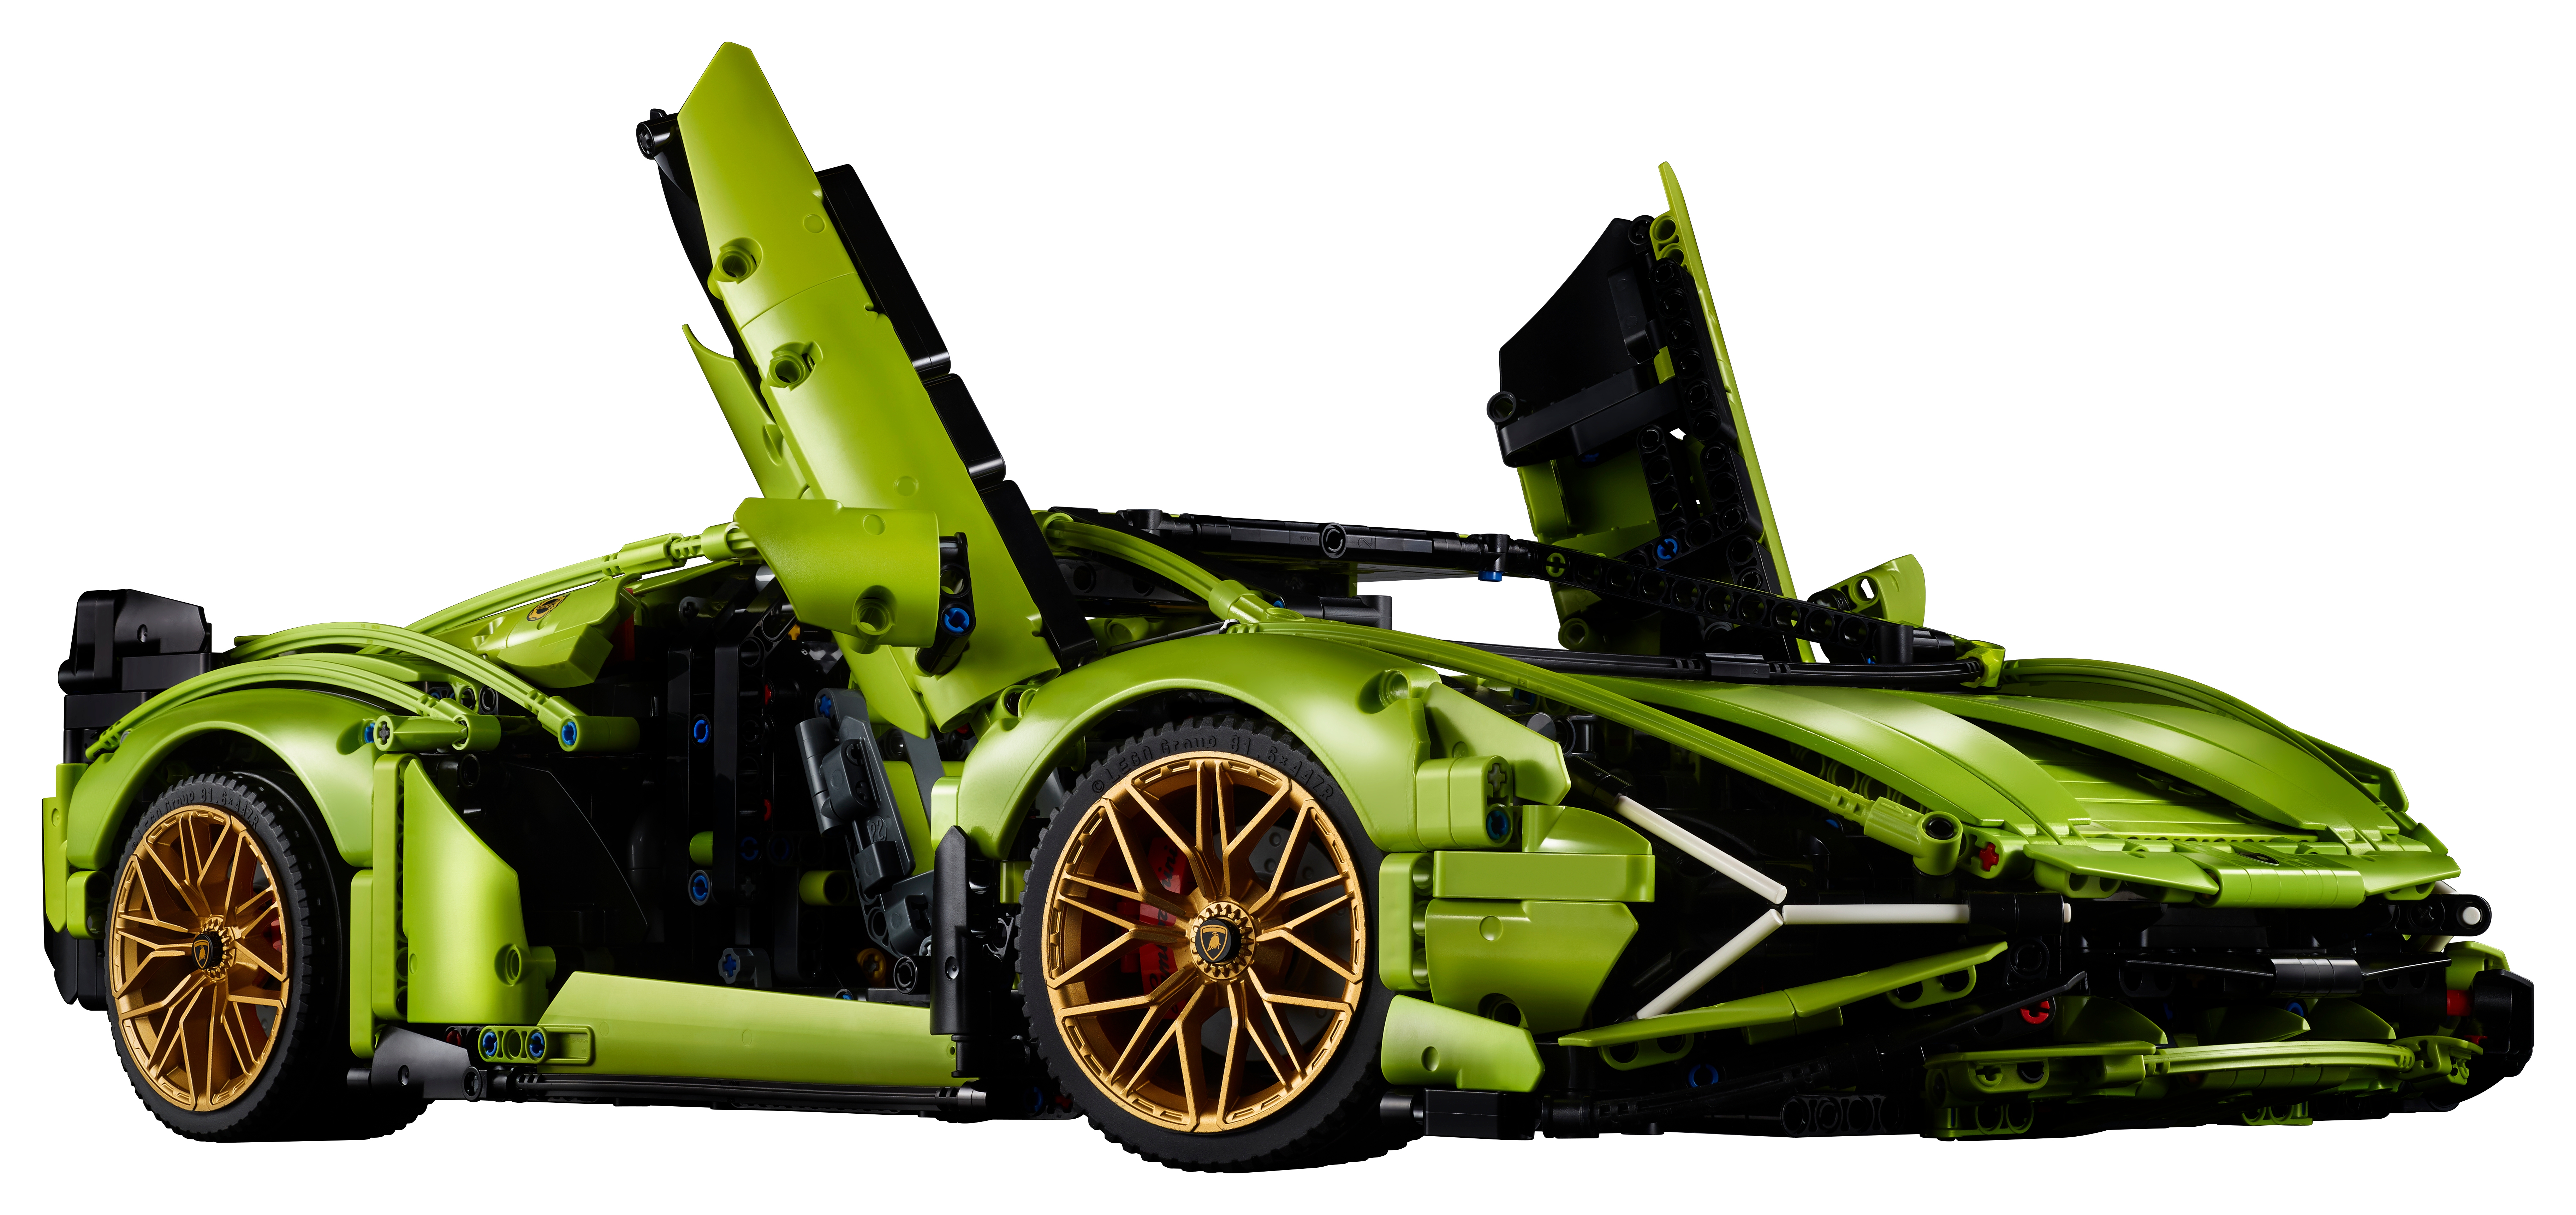  LEGO Technic Lamborghini Sián FKP 37 42115 - Juego de  construcción clásico de súper automóvil, exhibición exótica llamativa,  decoración del hogar u oficina, ideal para adultos o entusiastas de los  automóviles 